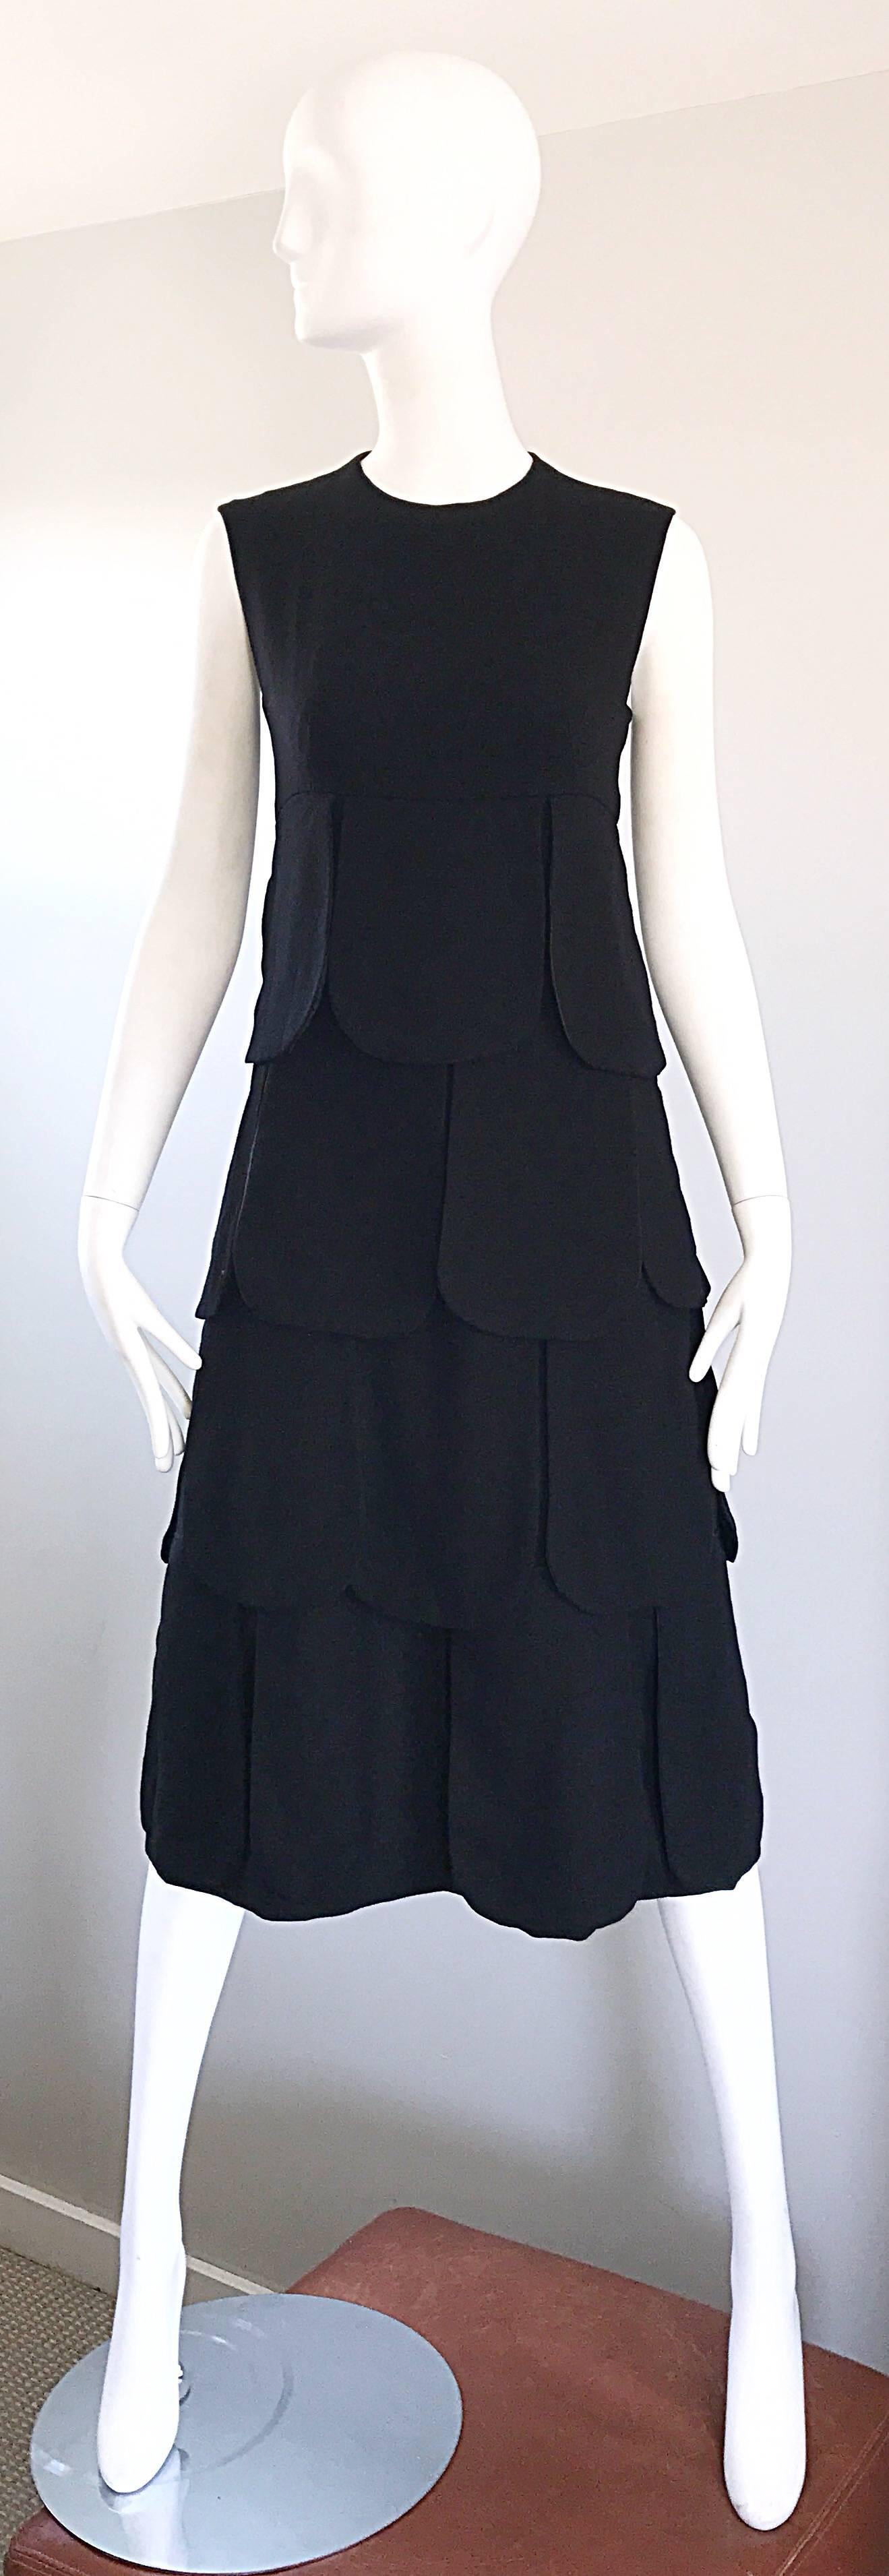 Seltene und ikonische 1960er Jahre PIERRE CARDIN Haute Couture schwarz Space Age Midi-Kleid! Mit Paneelen aus gefütterter schwarzer Wolle, die bei Bewegung toll aussehen! Tailliertes Mieder mit schmeichelhaftem A-Linien-Rock. Durchgehender